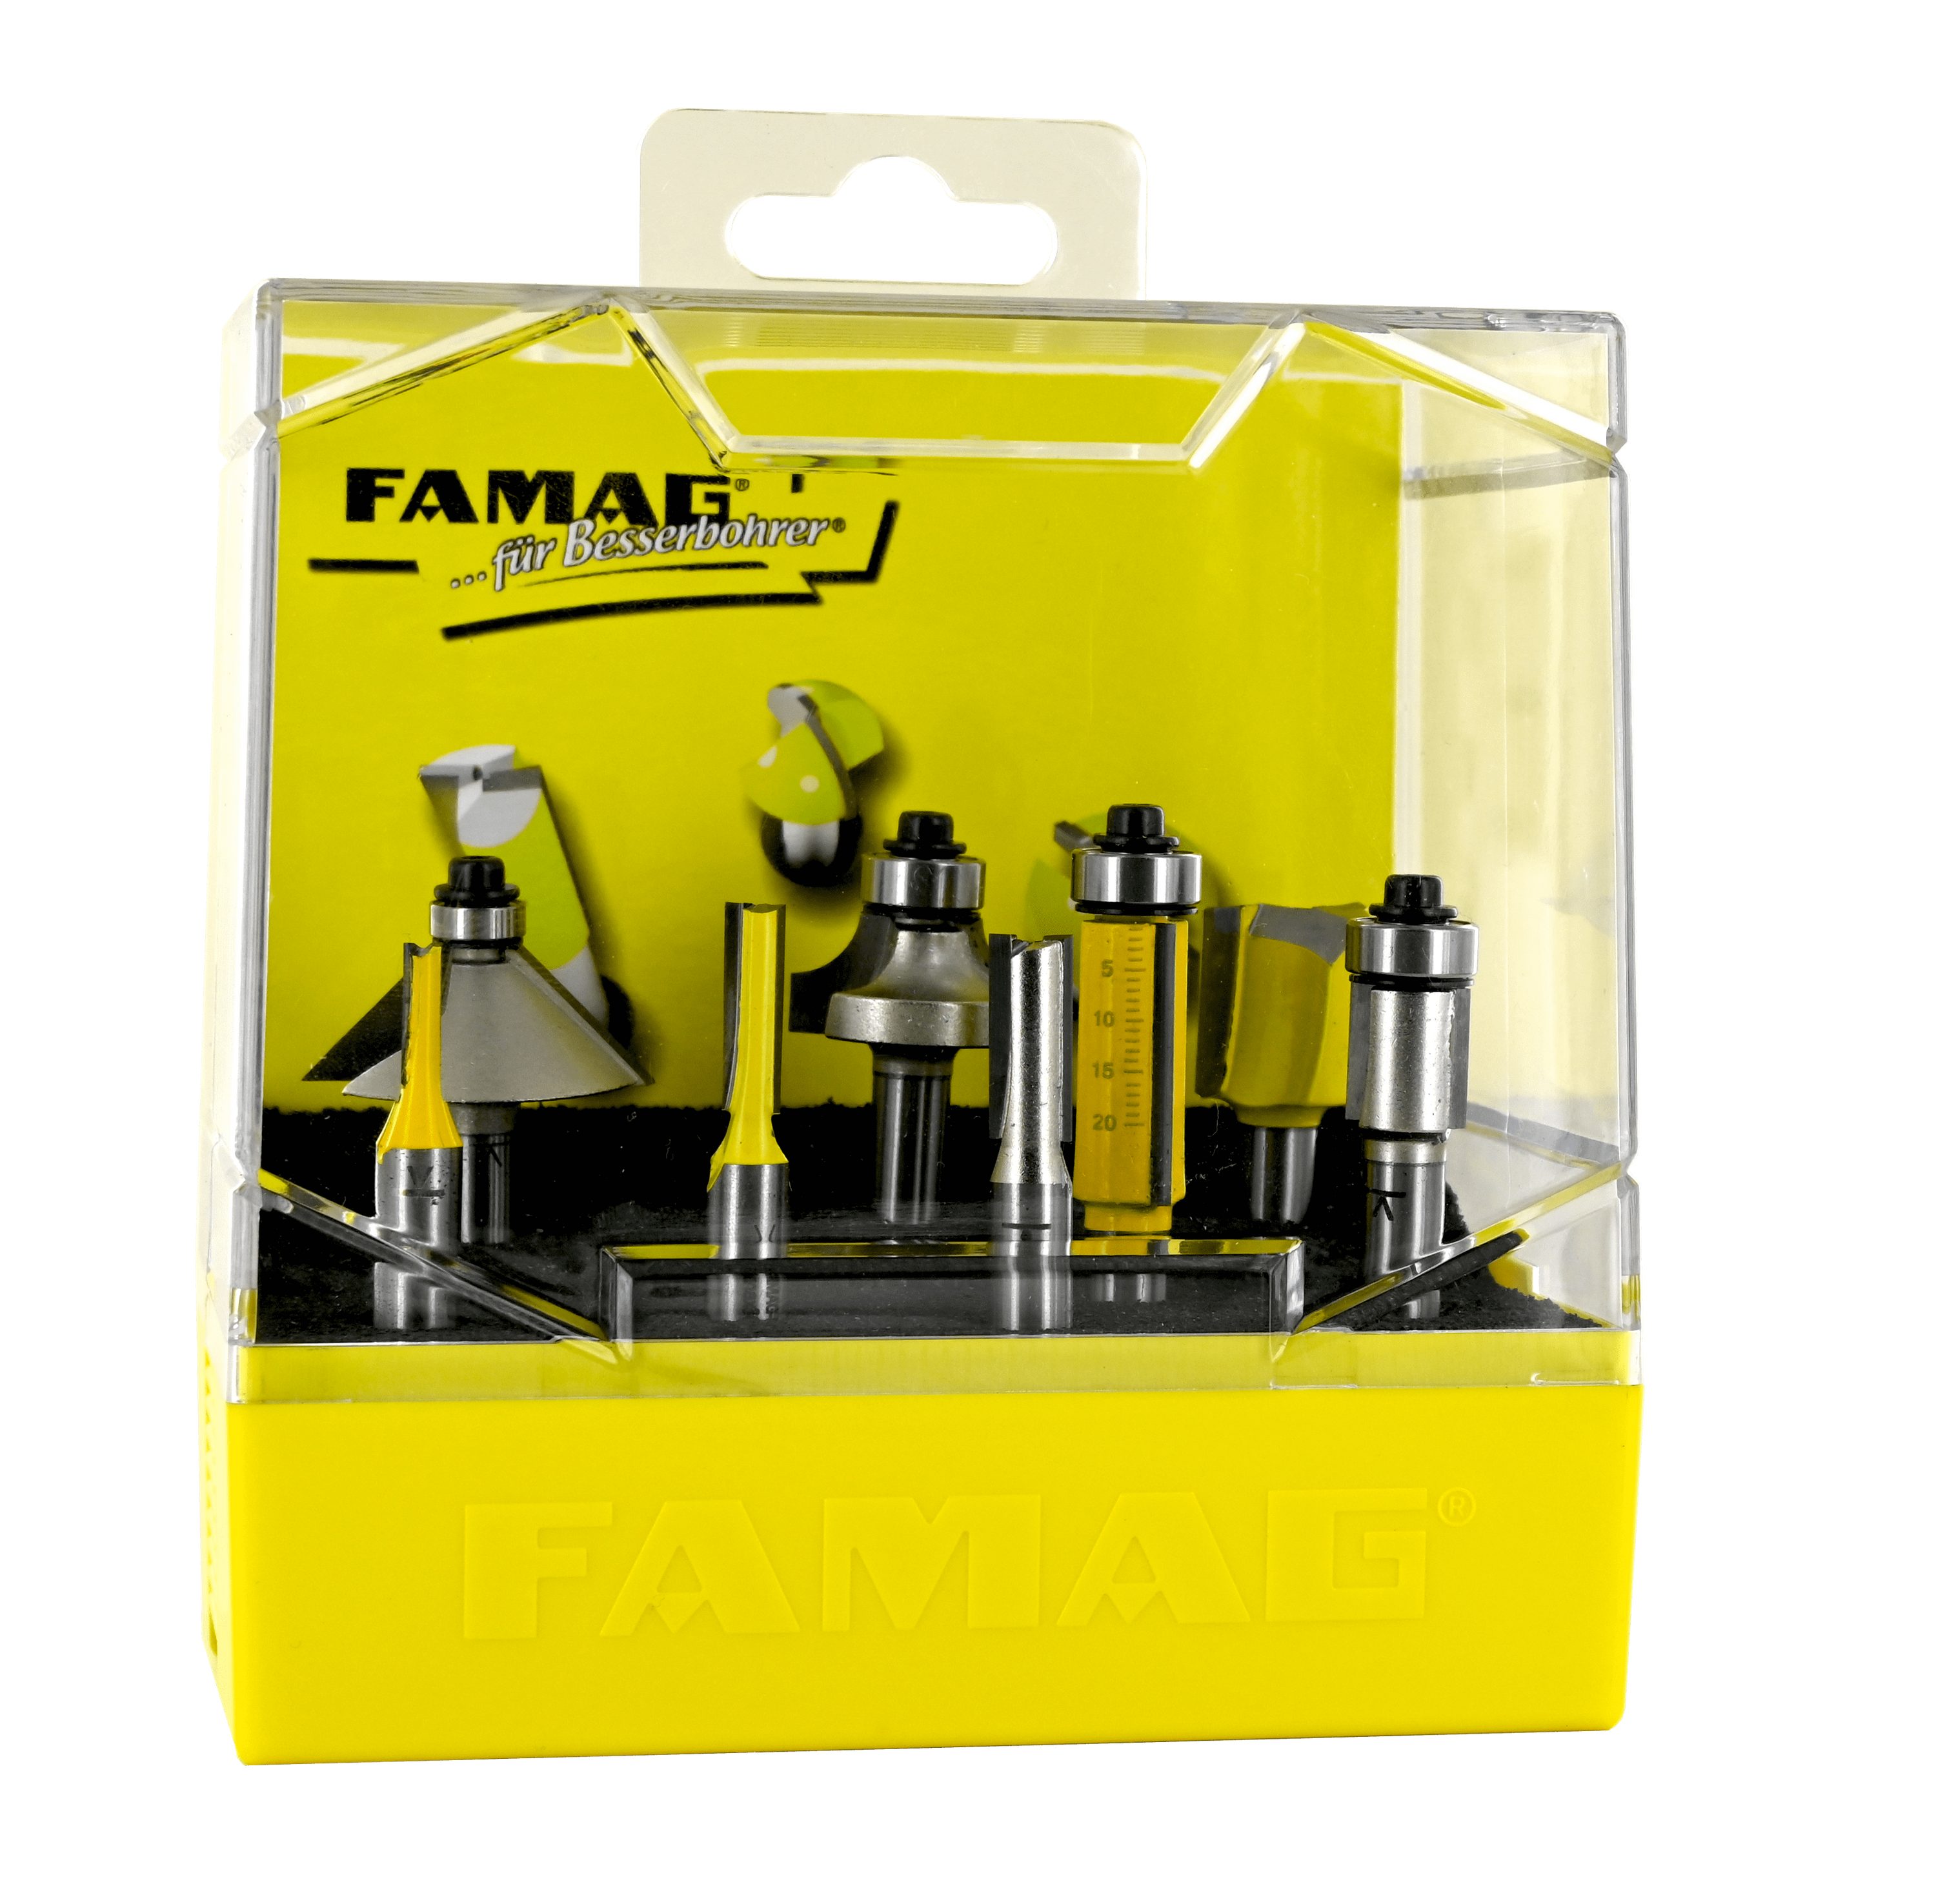 FAMAG Fräser-Set FAMAG 8-teiliges Set der FAMAG Bestseller HM-bestückt in Kunststoff-Box - 3113.908